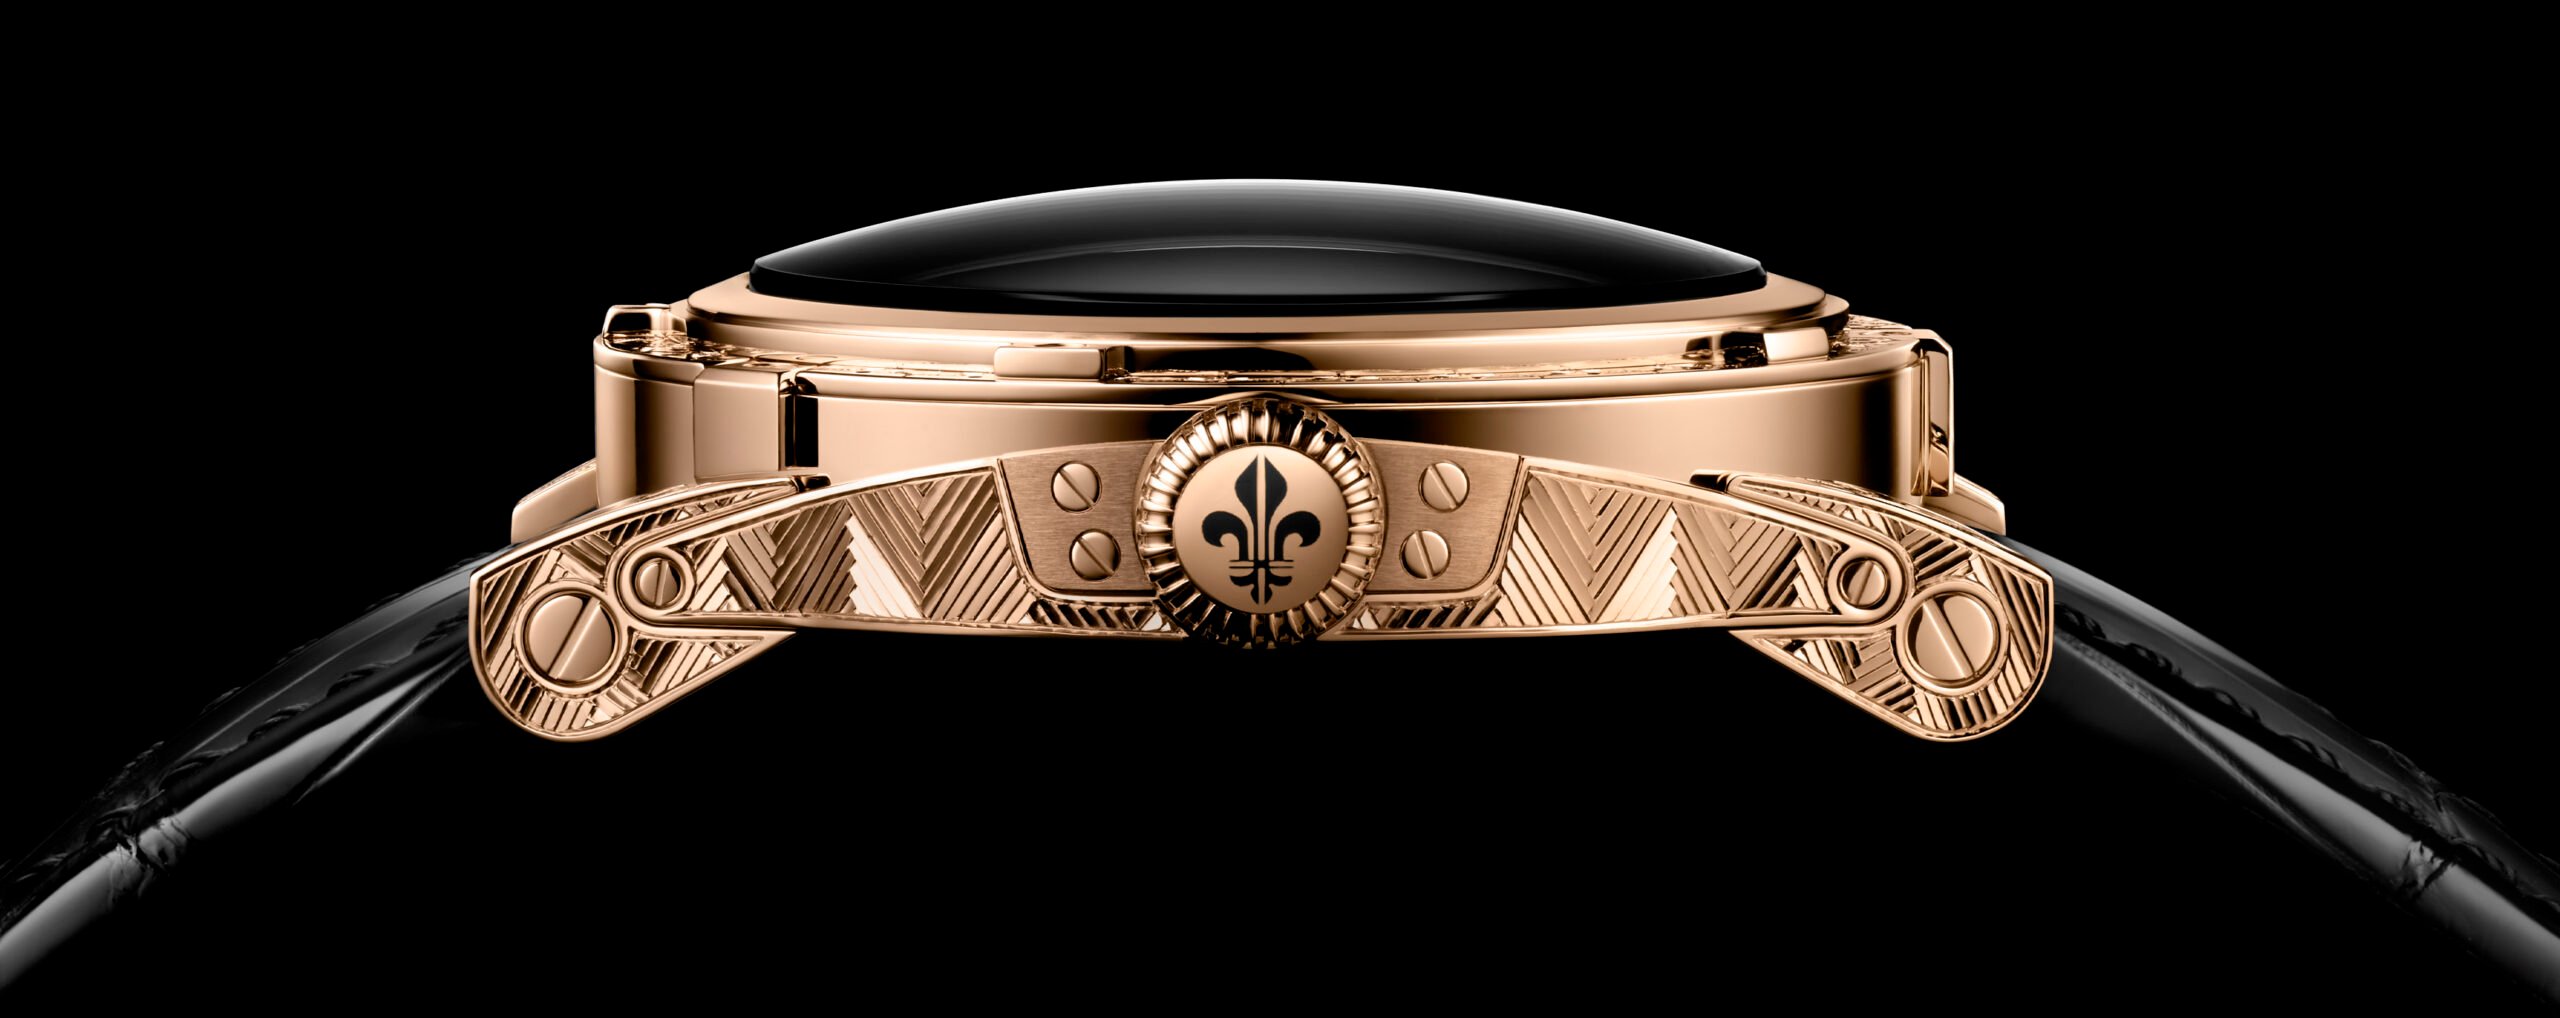 Watches & Wonders 2021: Louis Moinet Releases The Unique 